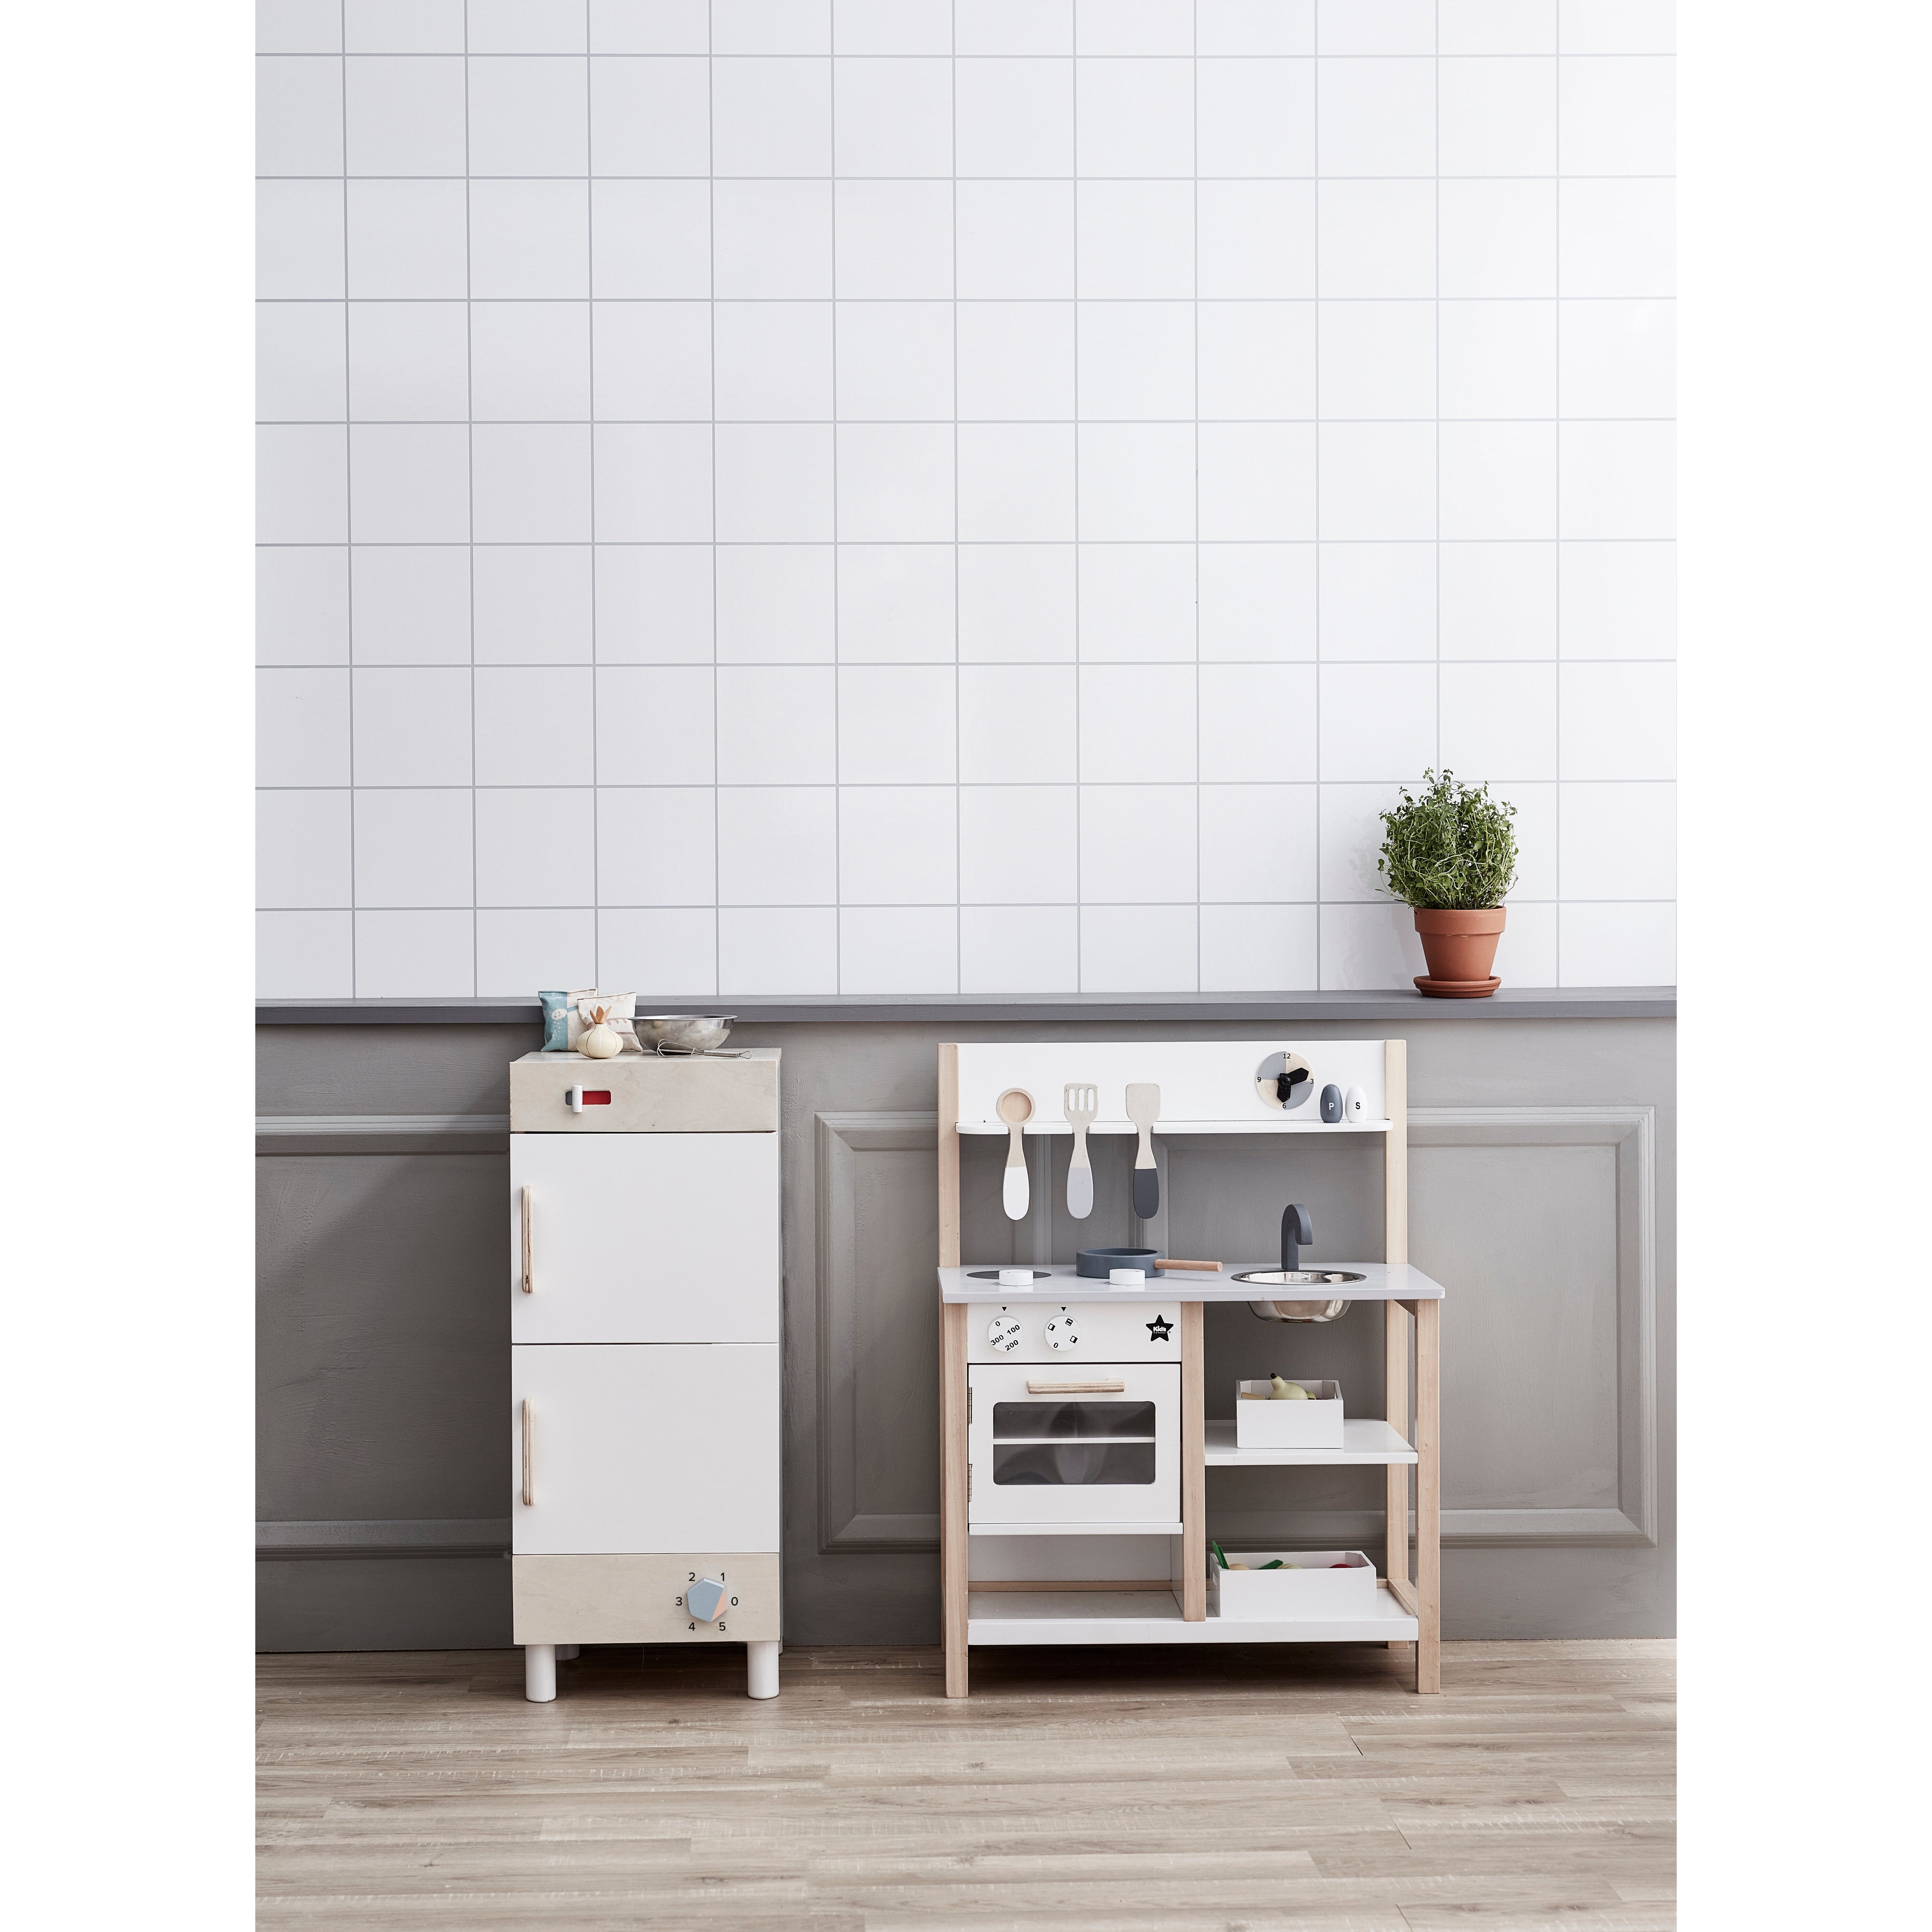 kids-concept-kitchen-natural-white-kids-hub-kidc-1000161- (4)